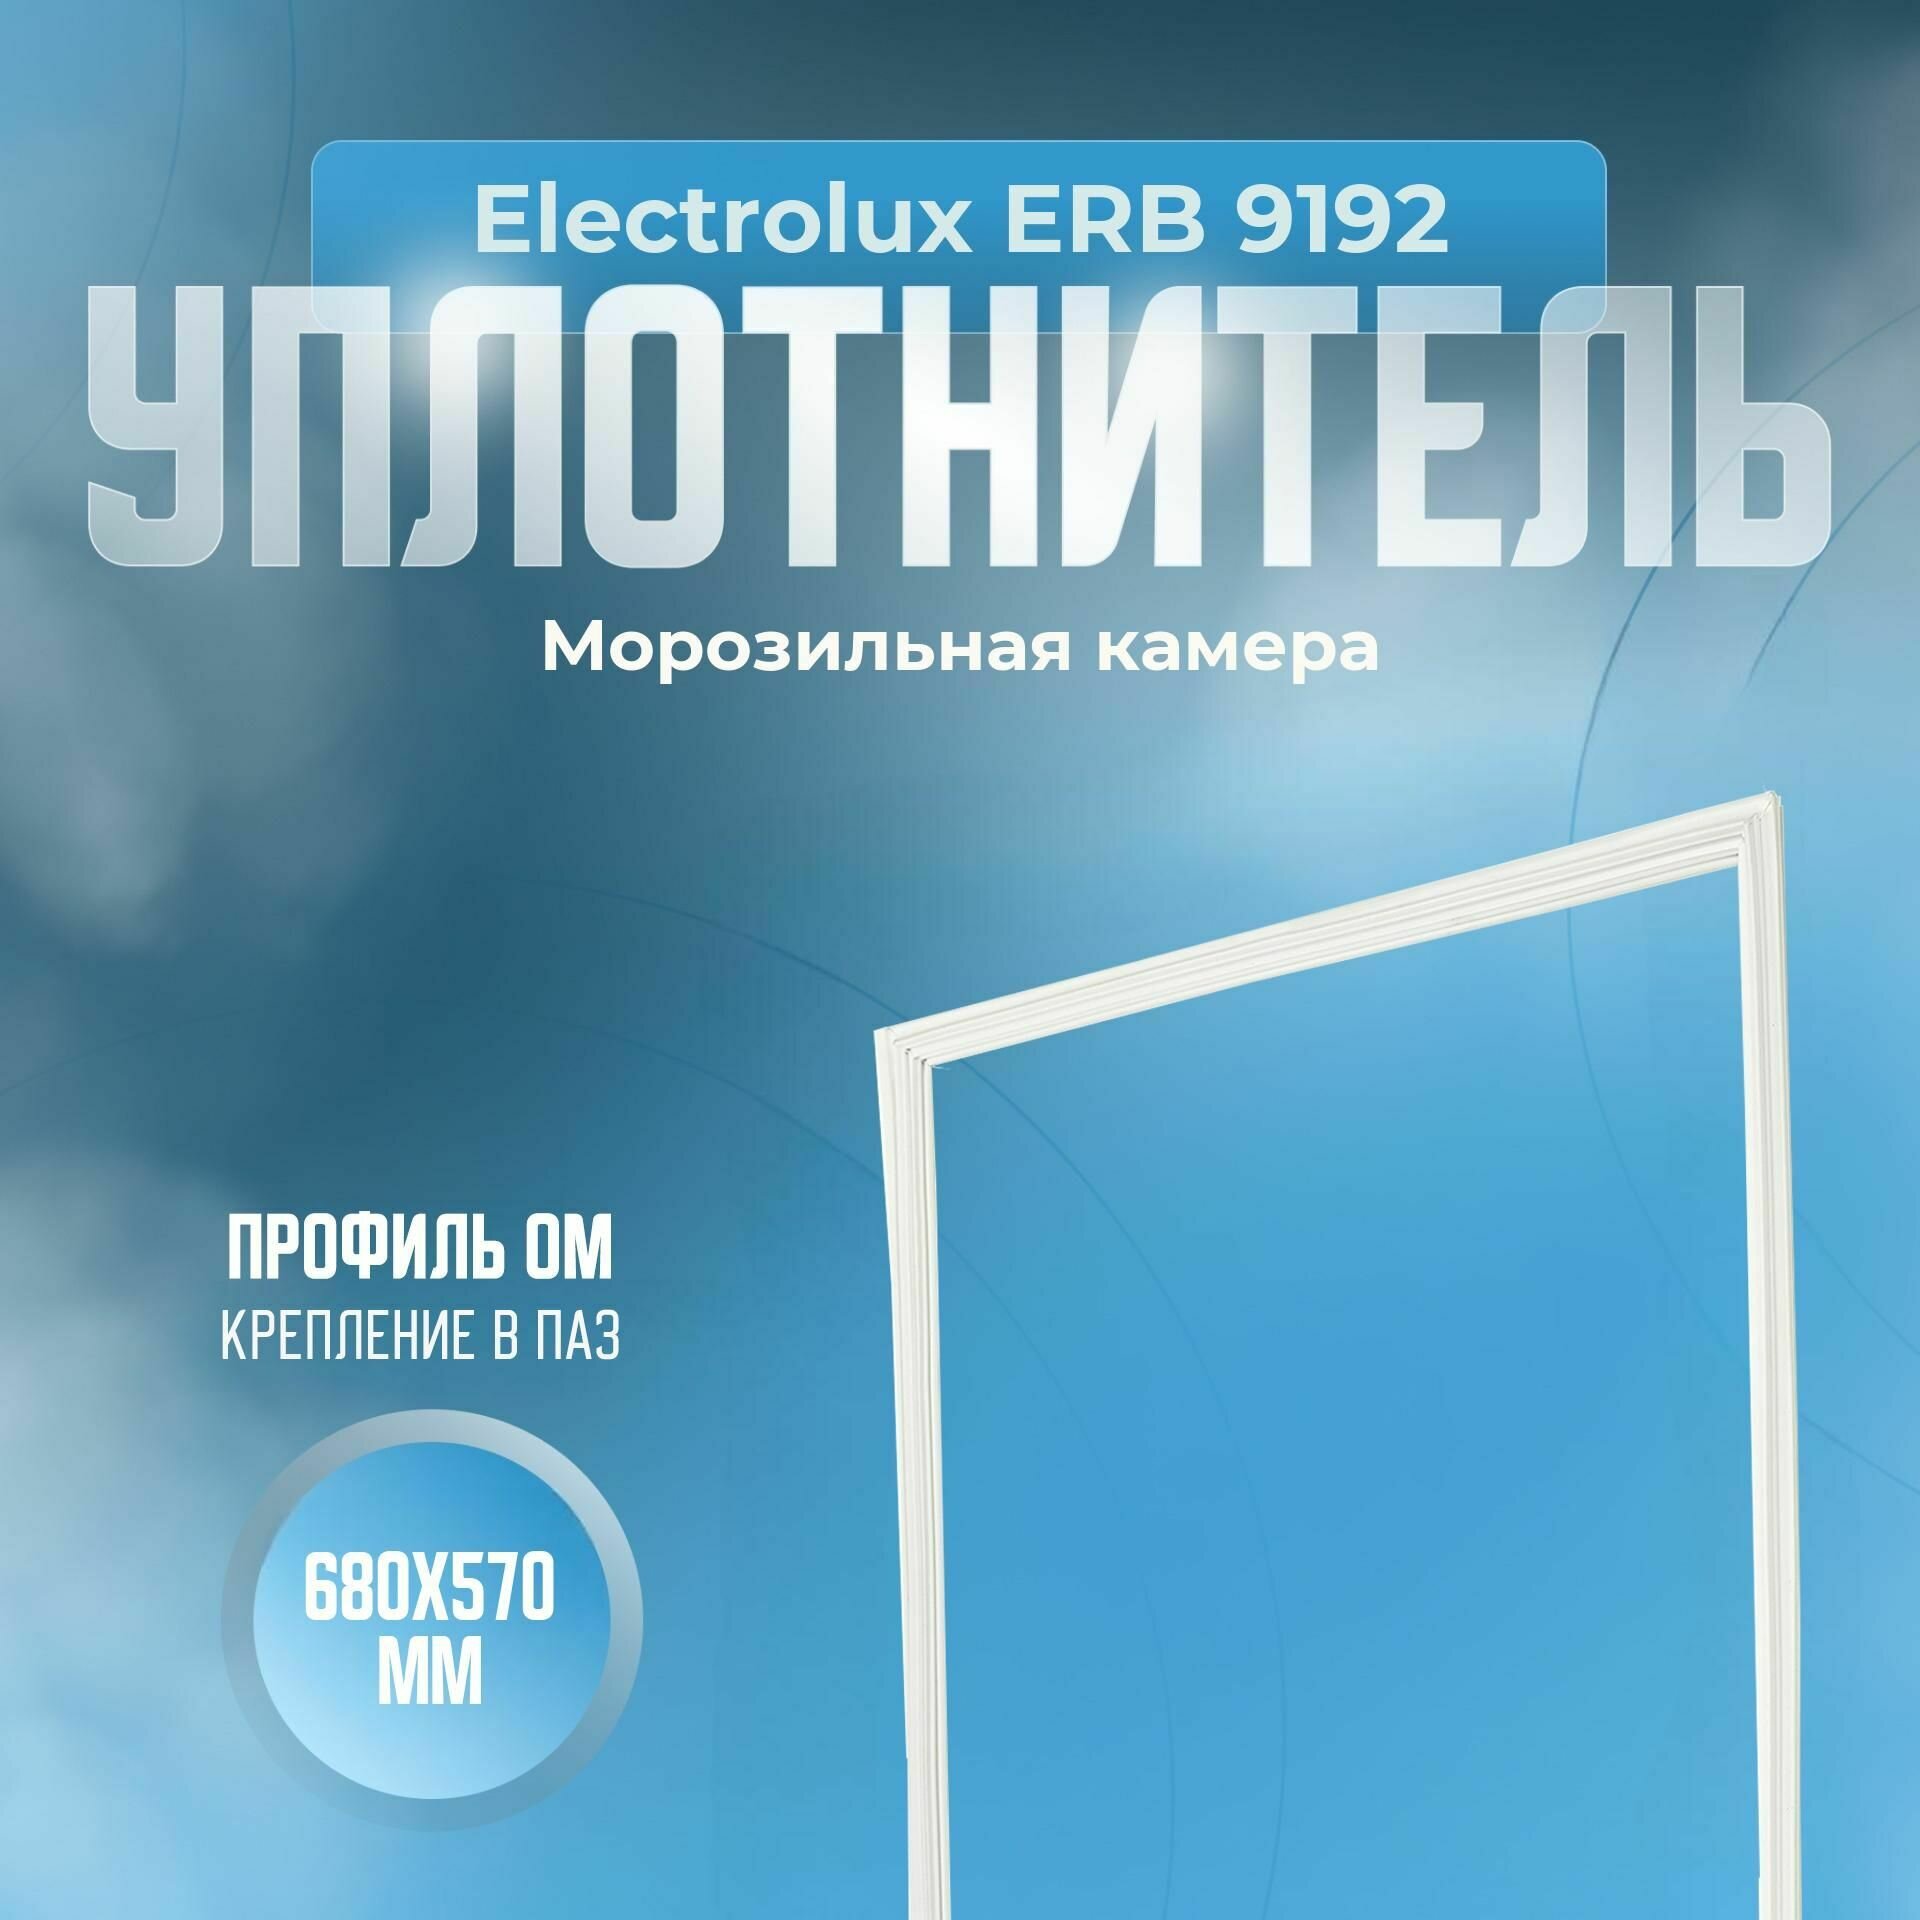 Уплотнитель Electrolux ERB 9192. м. к, Размер - 680х570 мм. ОМ